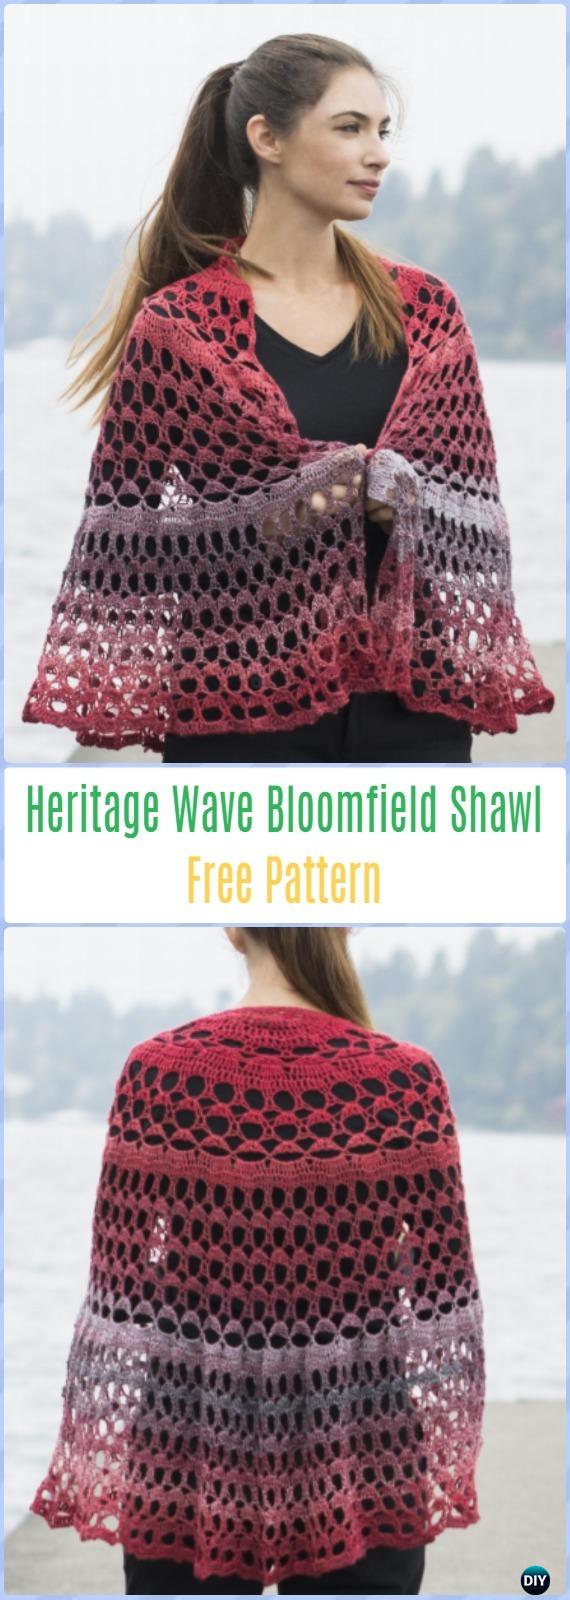 Crochet Heritage Wave Bloomfield Shawl Free Pattern - Crochet Women Shawl Sweater Outwear Free Patterns